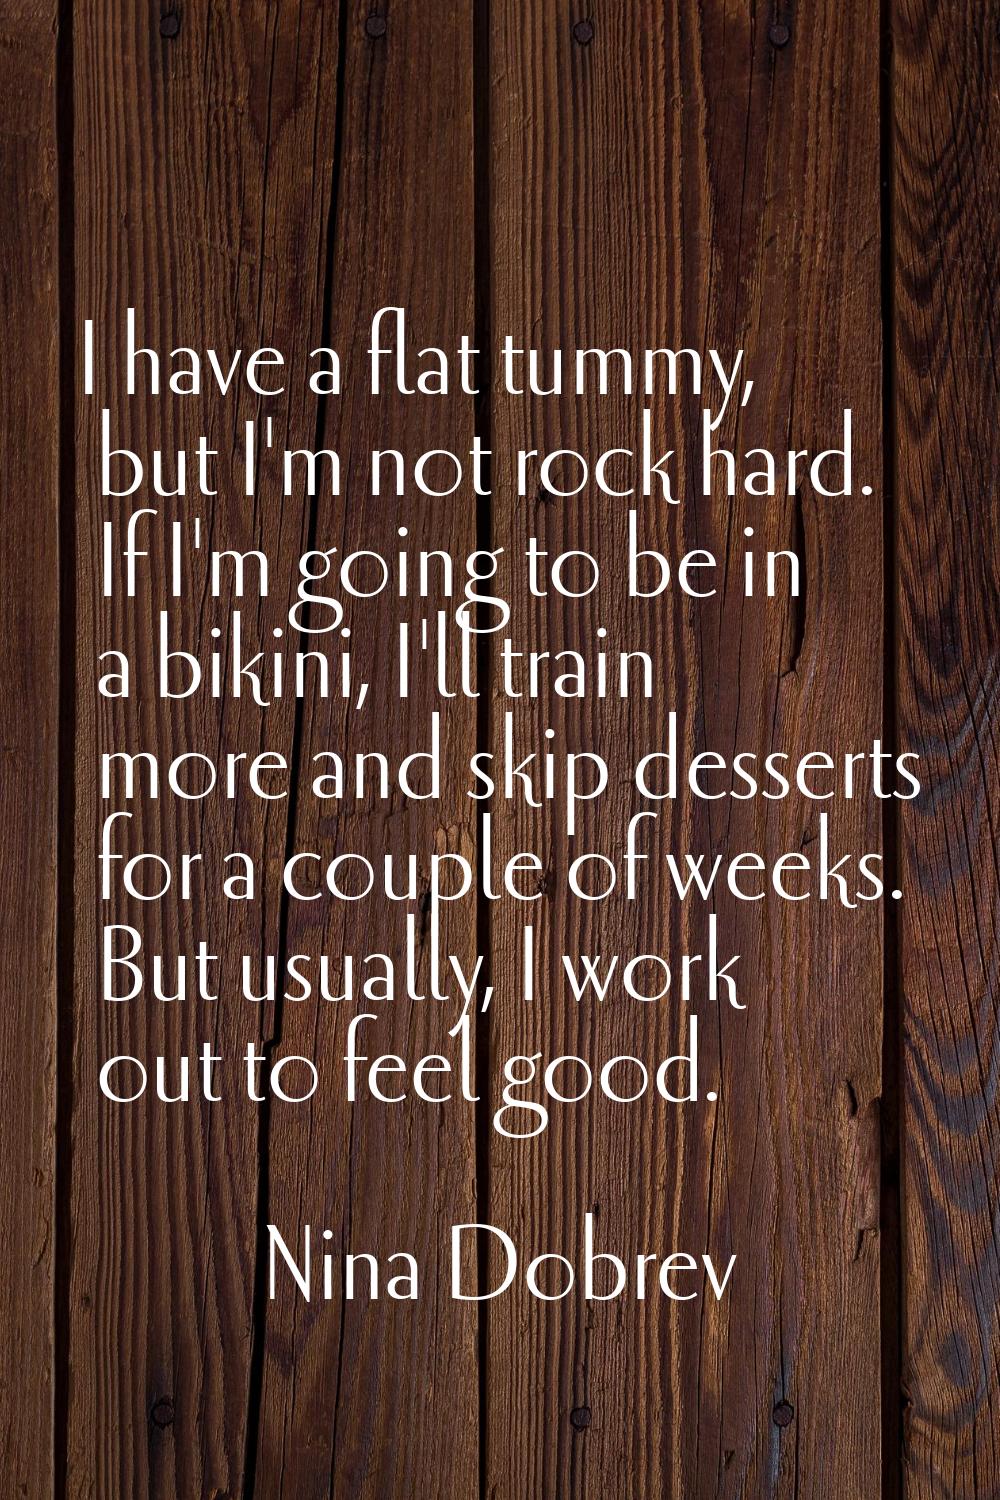 I have a flat tummy, but I'm not rock hard. If I'm going to be in a bikini, I'll train more and ski